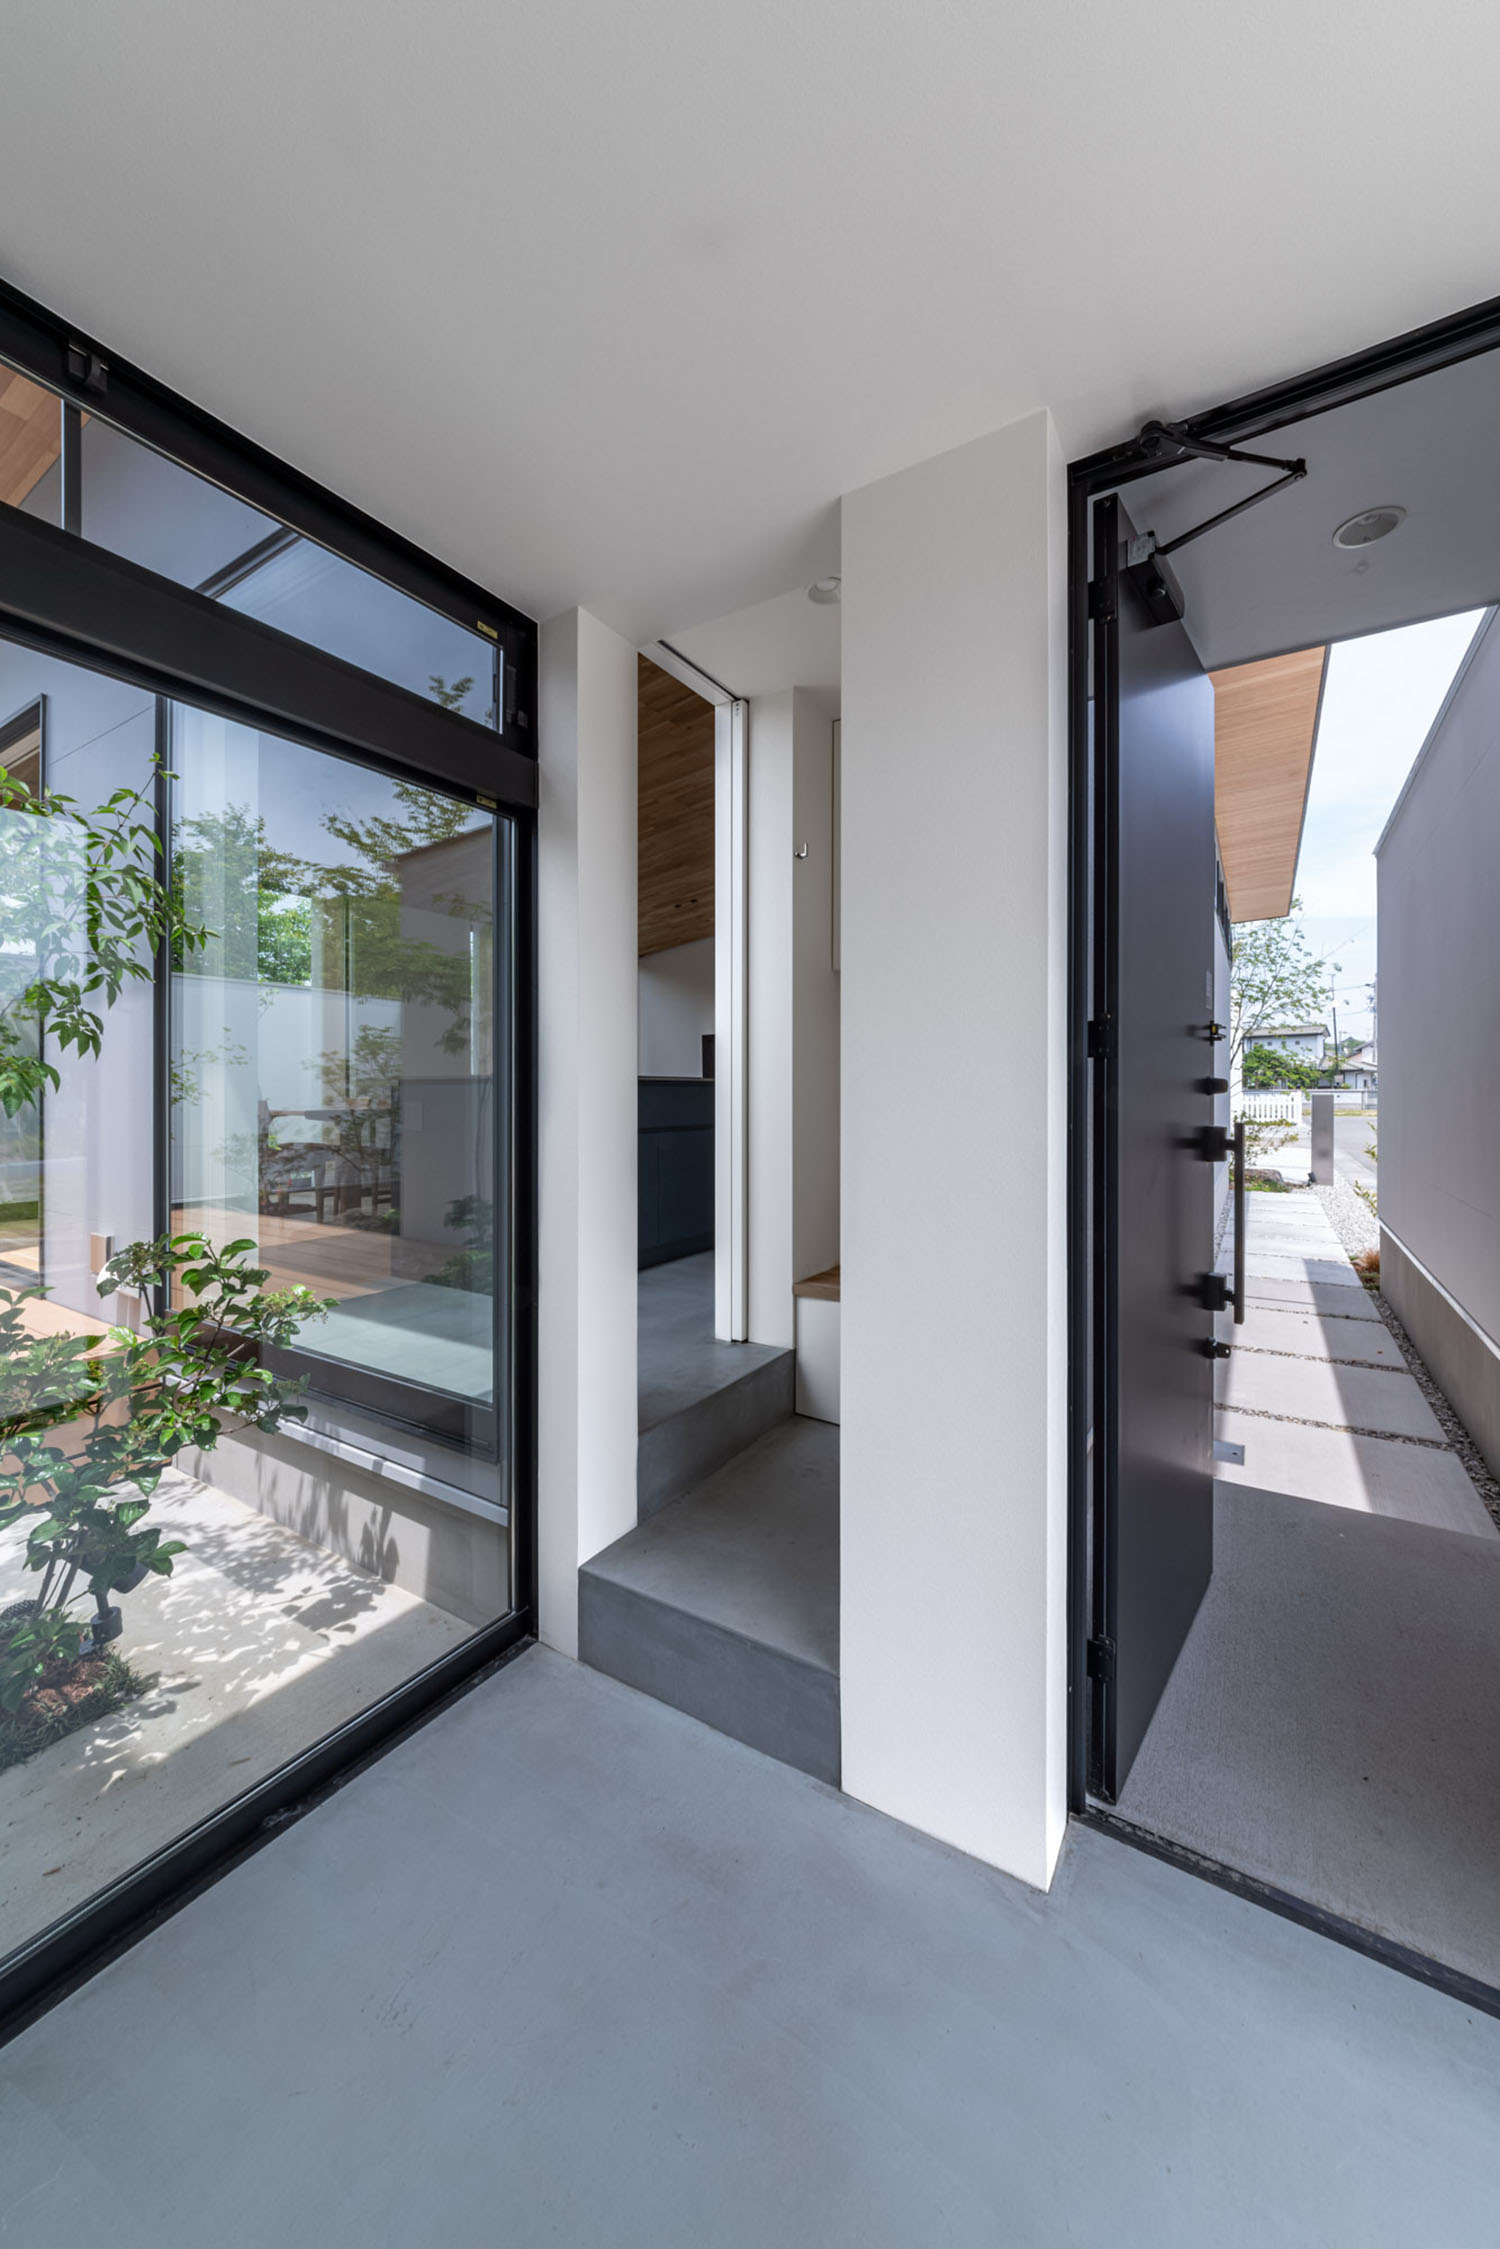 玄関と室内空間をつなぐ、中庭が見えるモルタルの土間・デザイン住宅